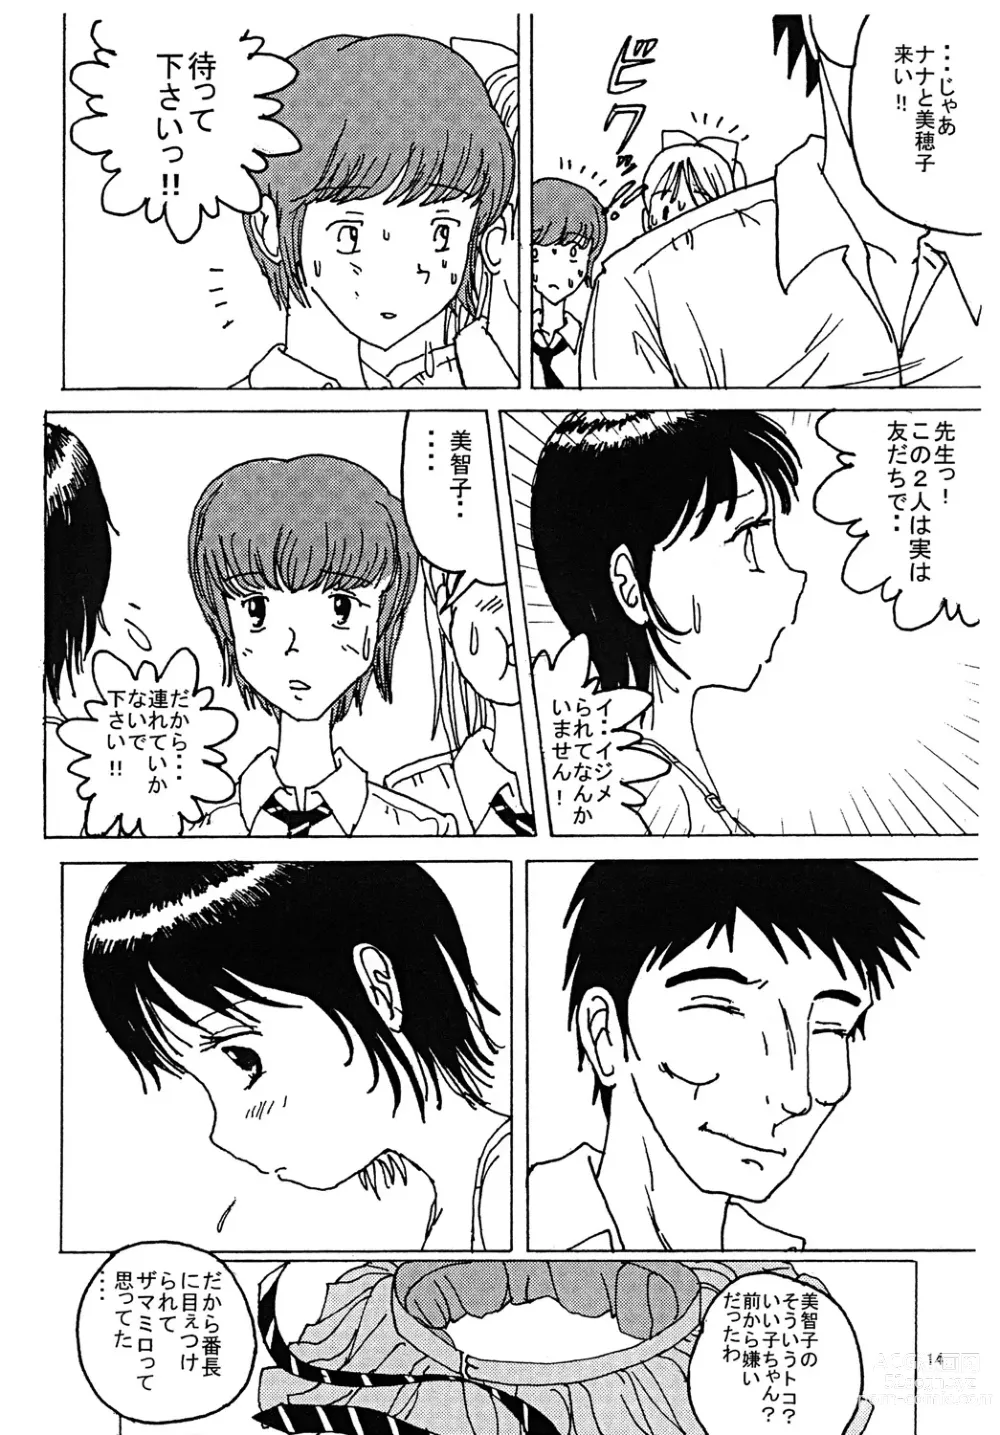 Page 13 of doujinshi Mune Ippai no Dizzy